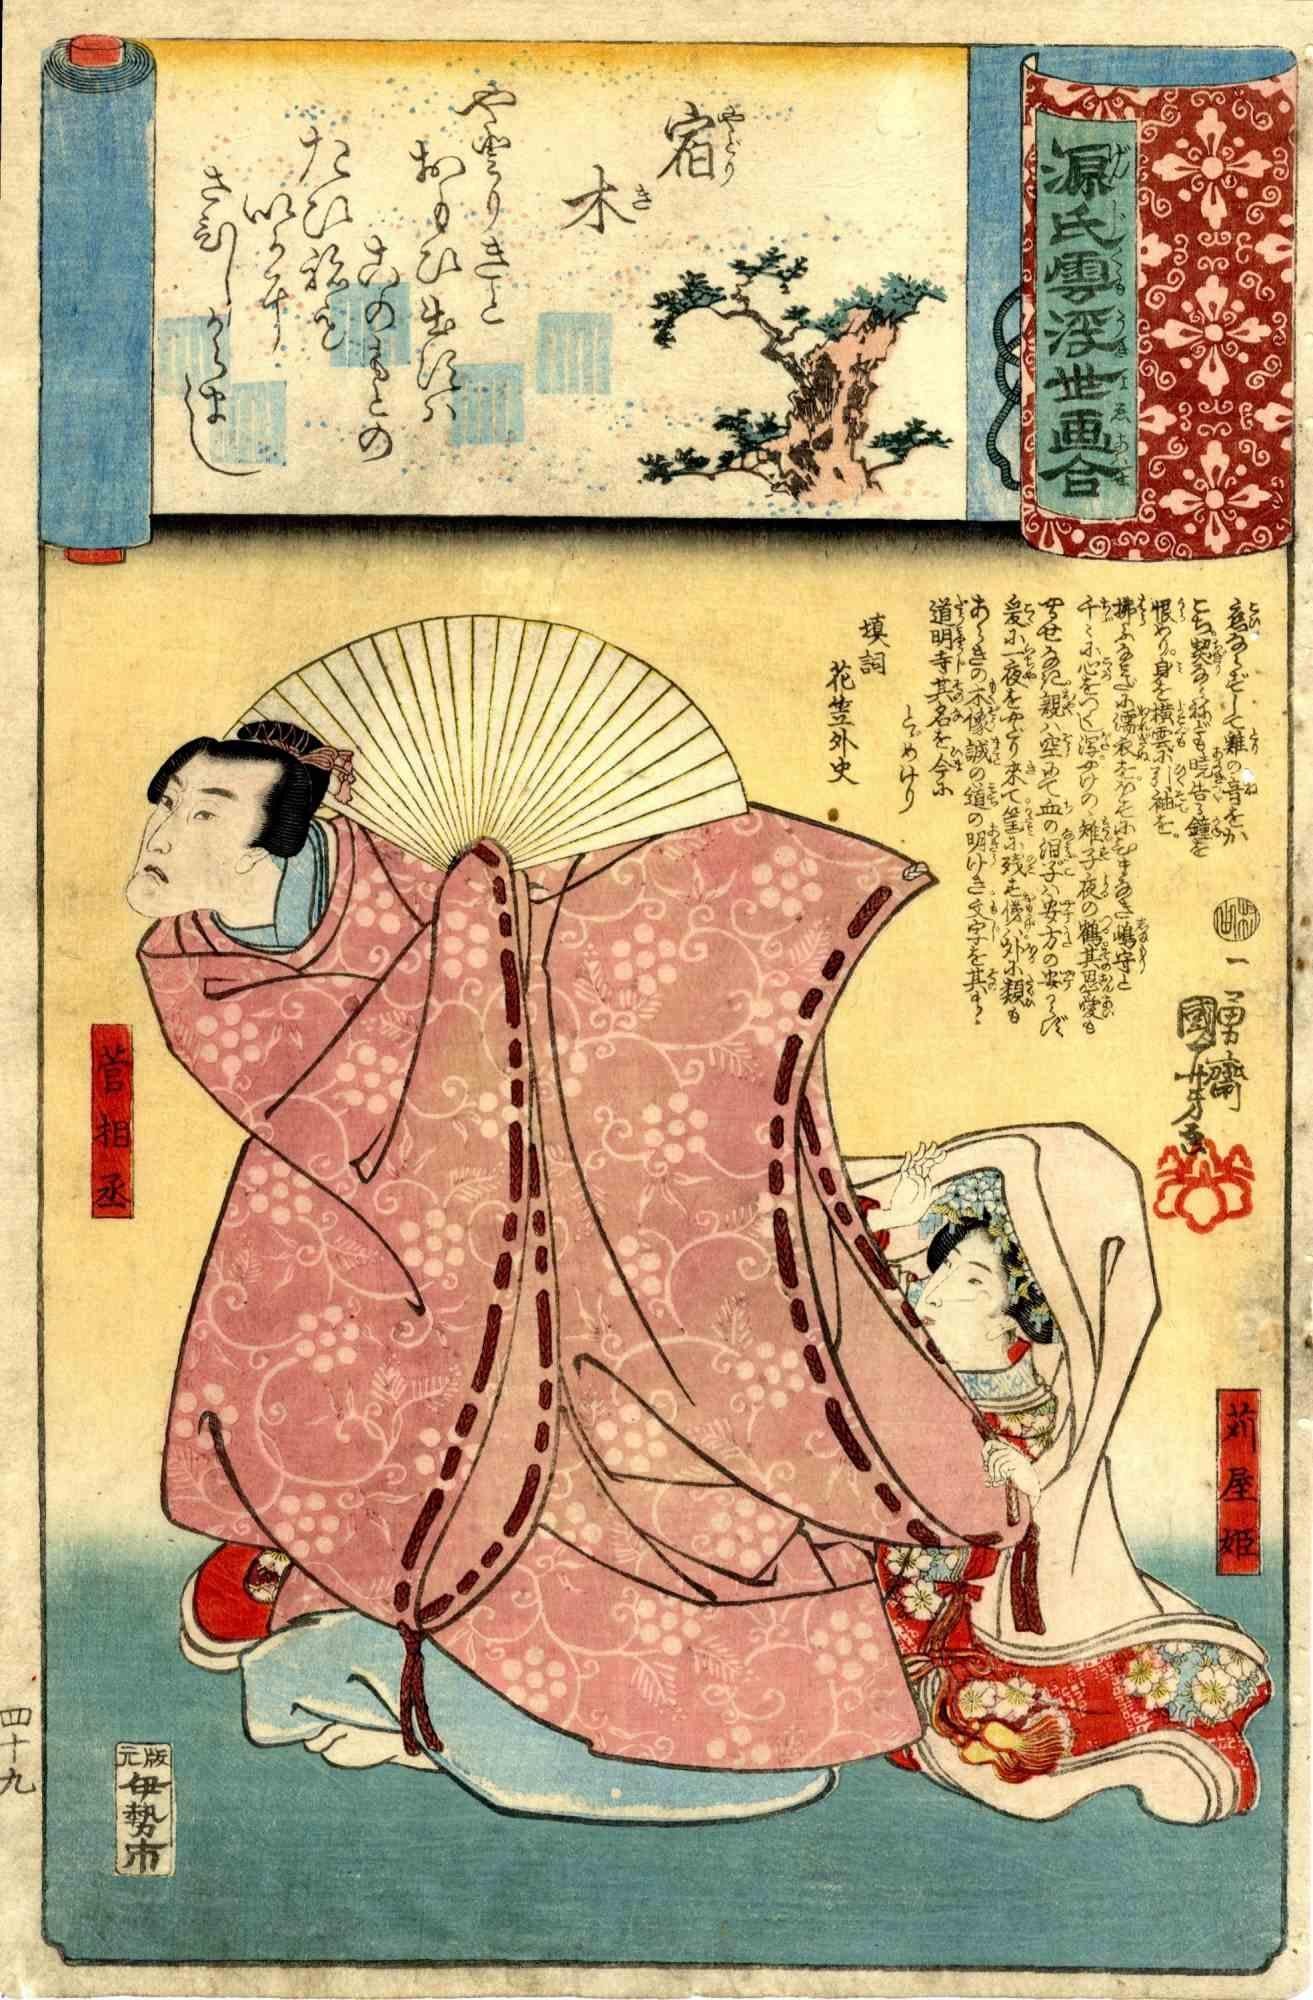 Kabukie - Original Woodcut by Utagawa Kuniyoshi - 1845